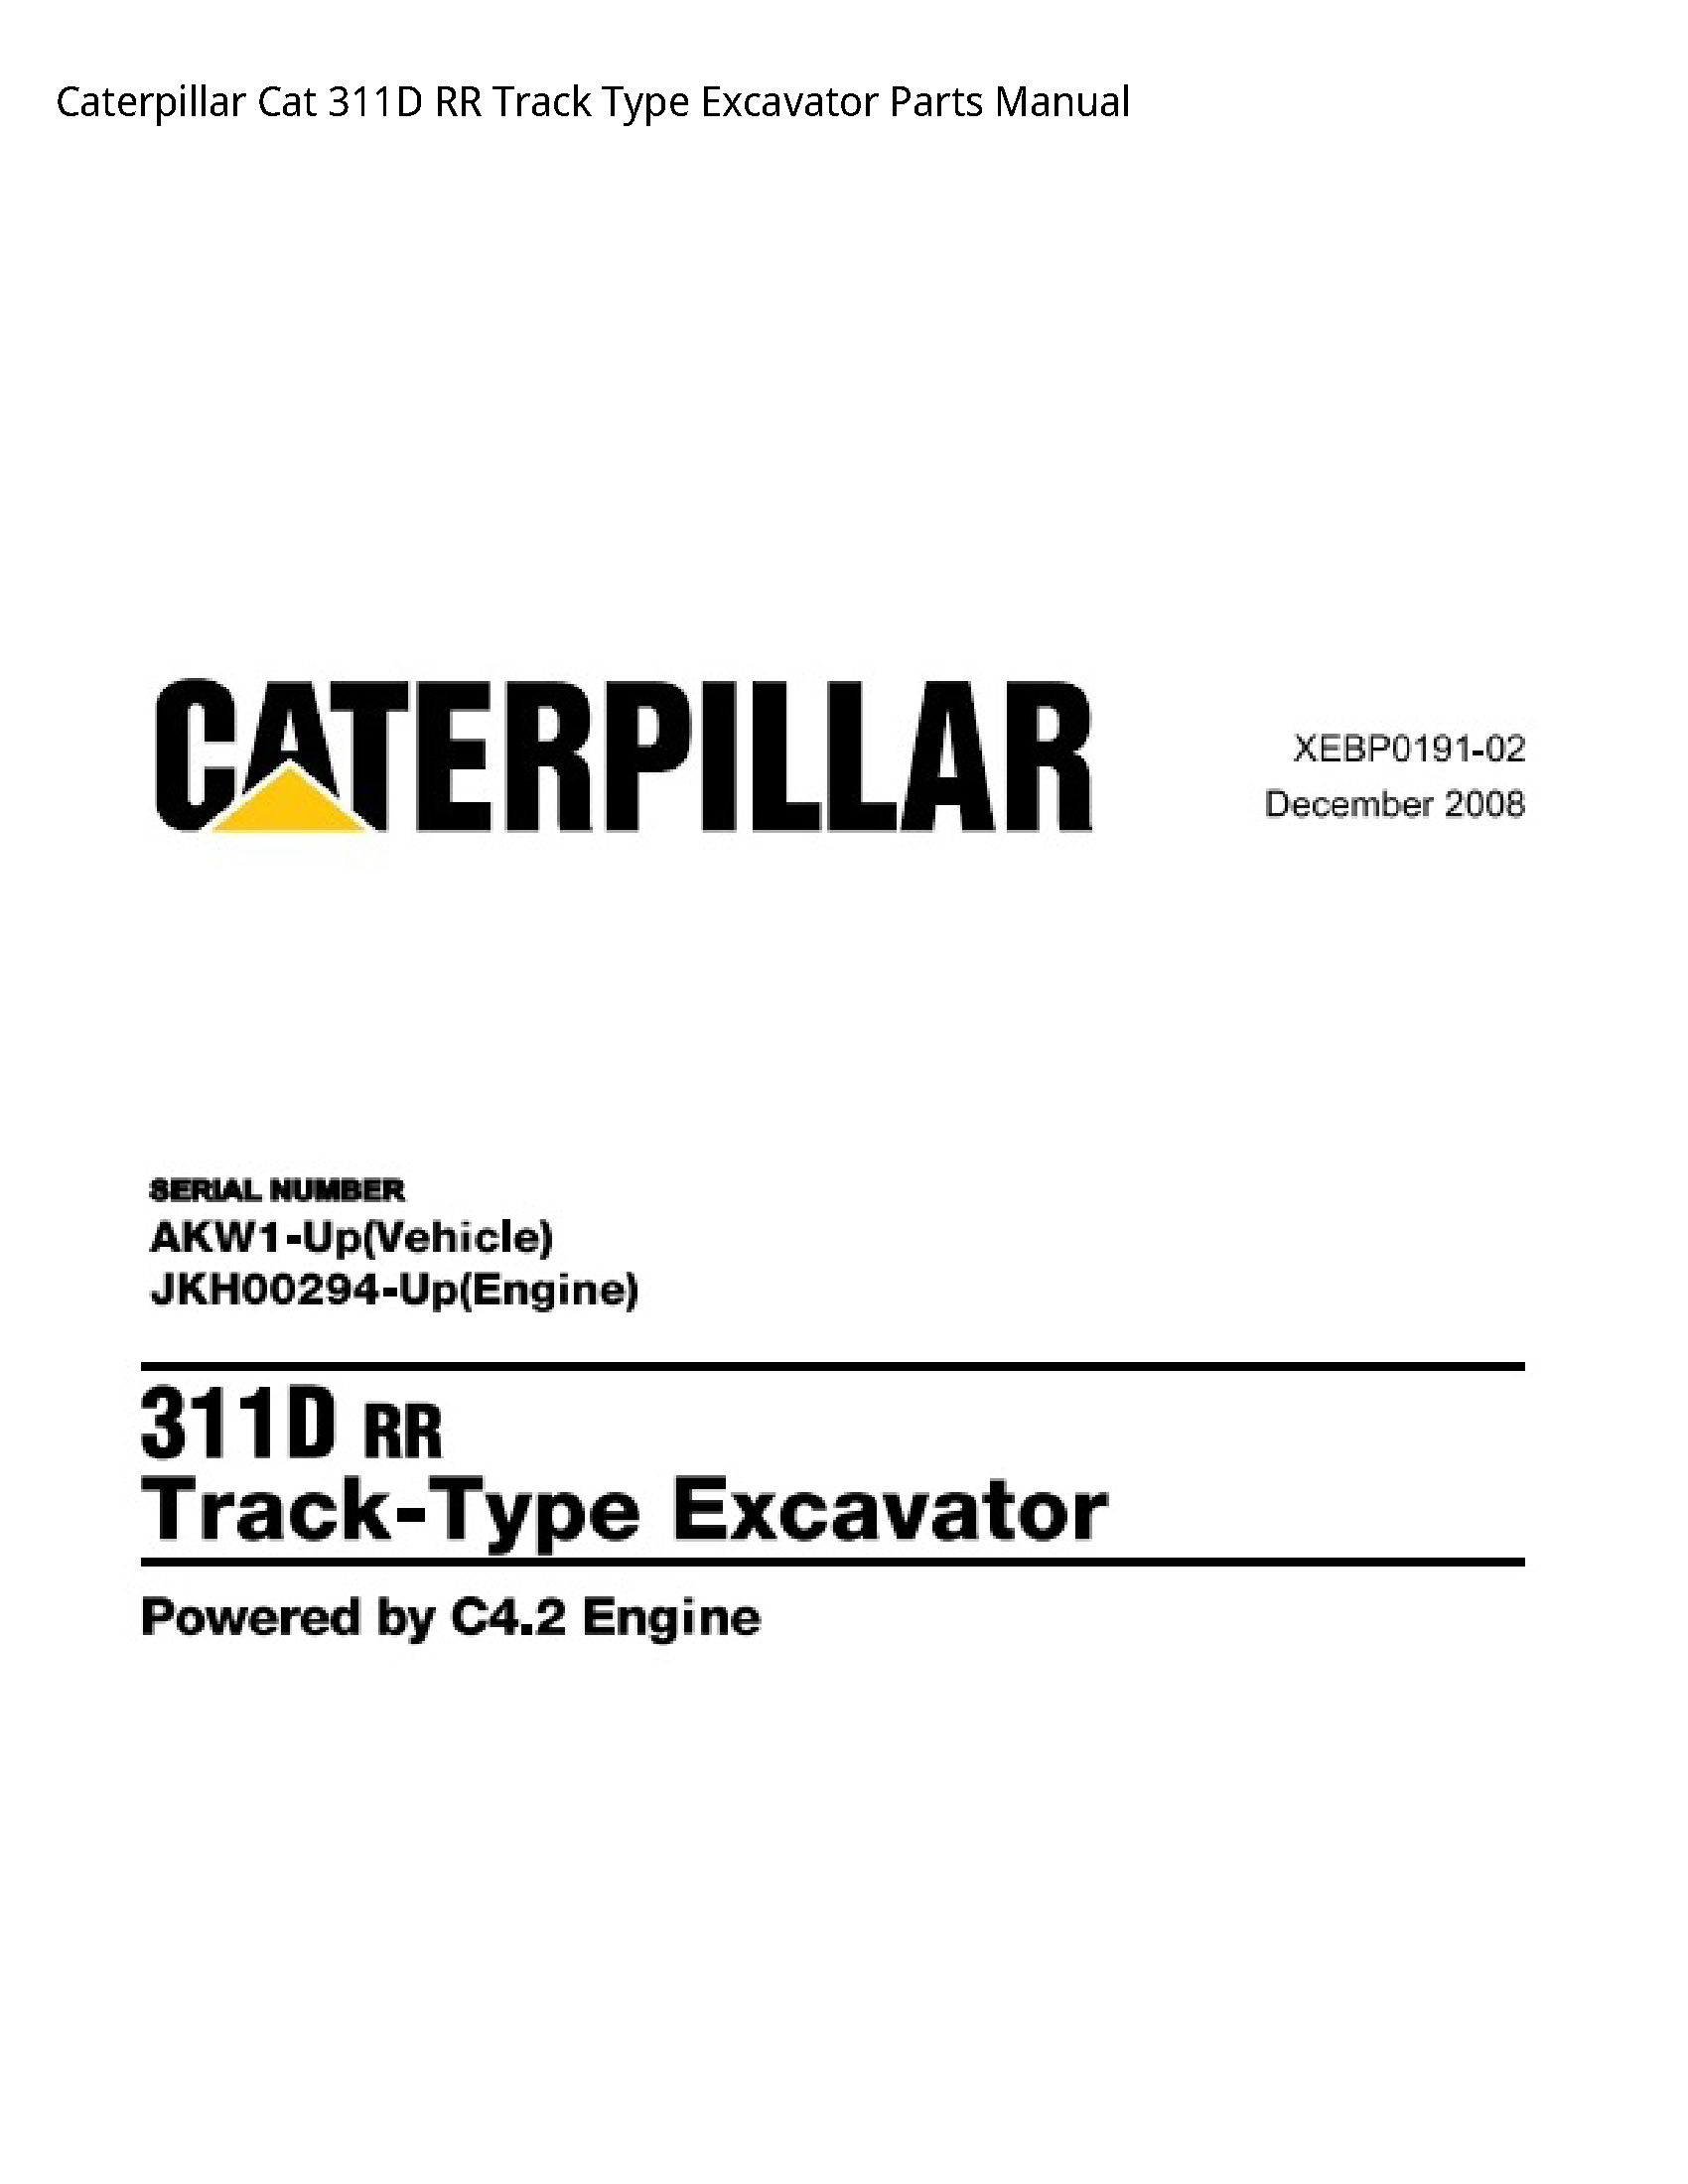 Caterpillar 311D Cat RR Track Type Excavator Parts manual